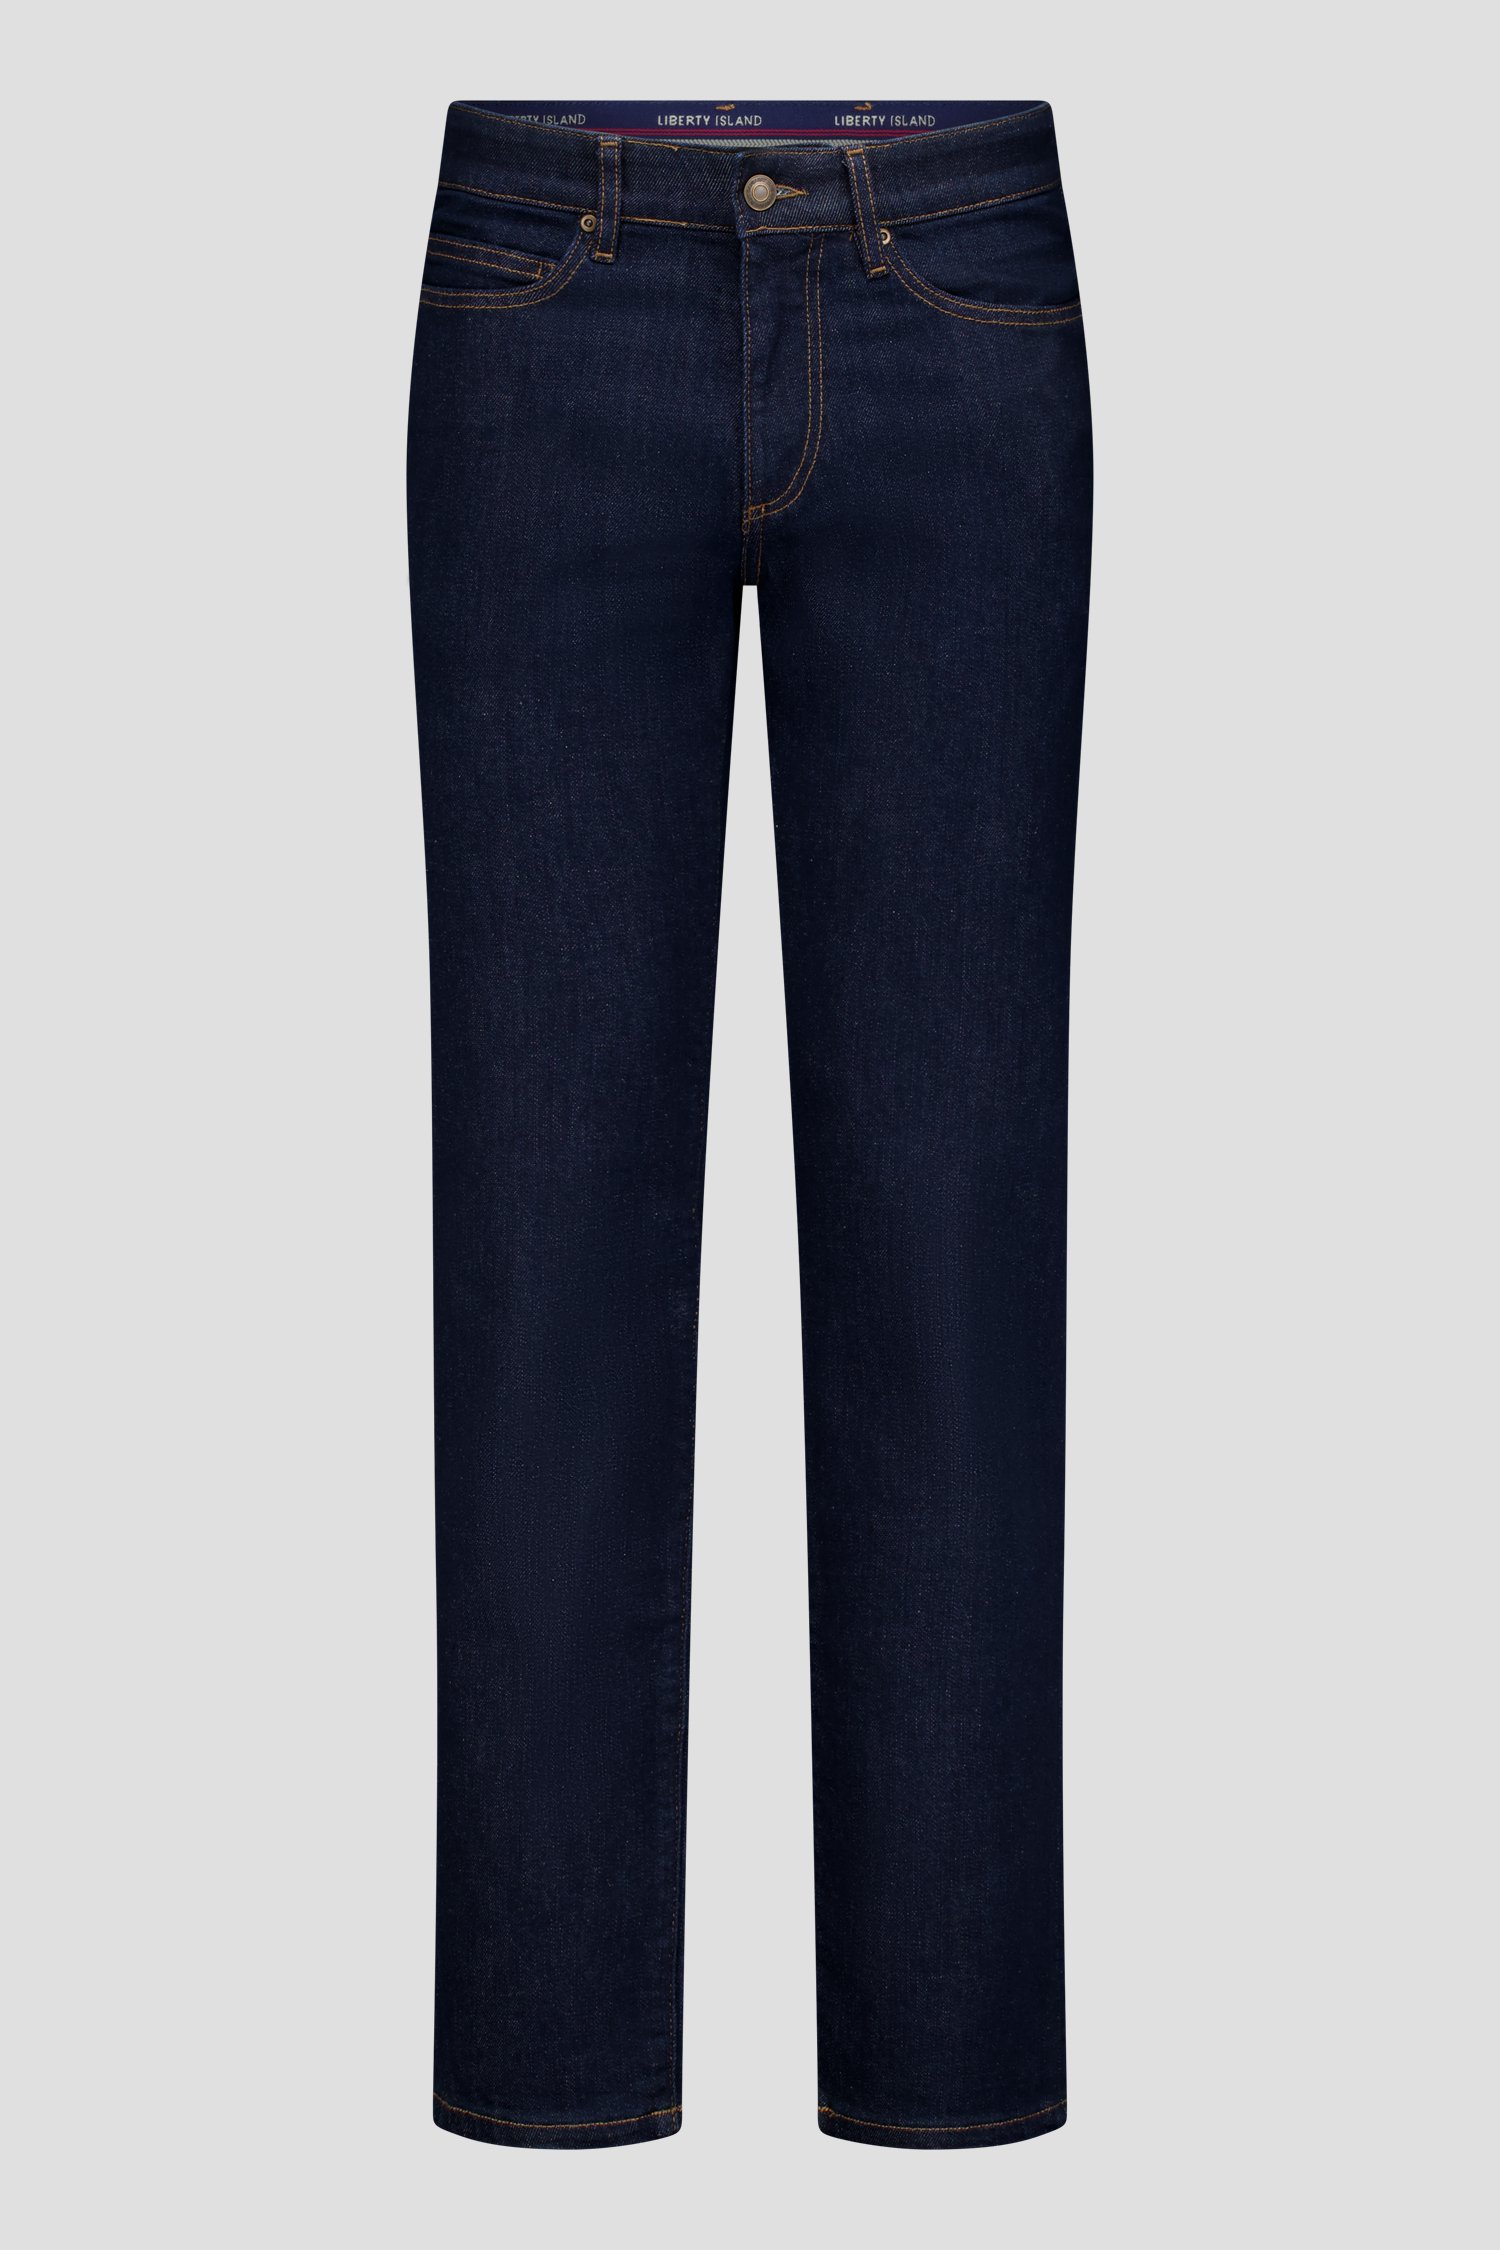 Donkerblauwe jeans met stretch van Dansaert Blue voor Heren